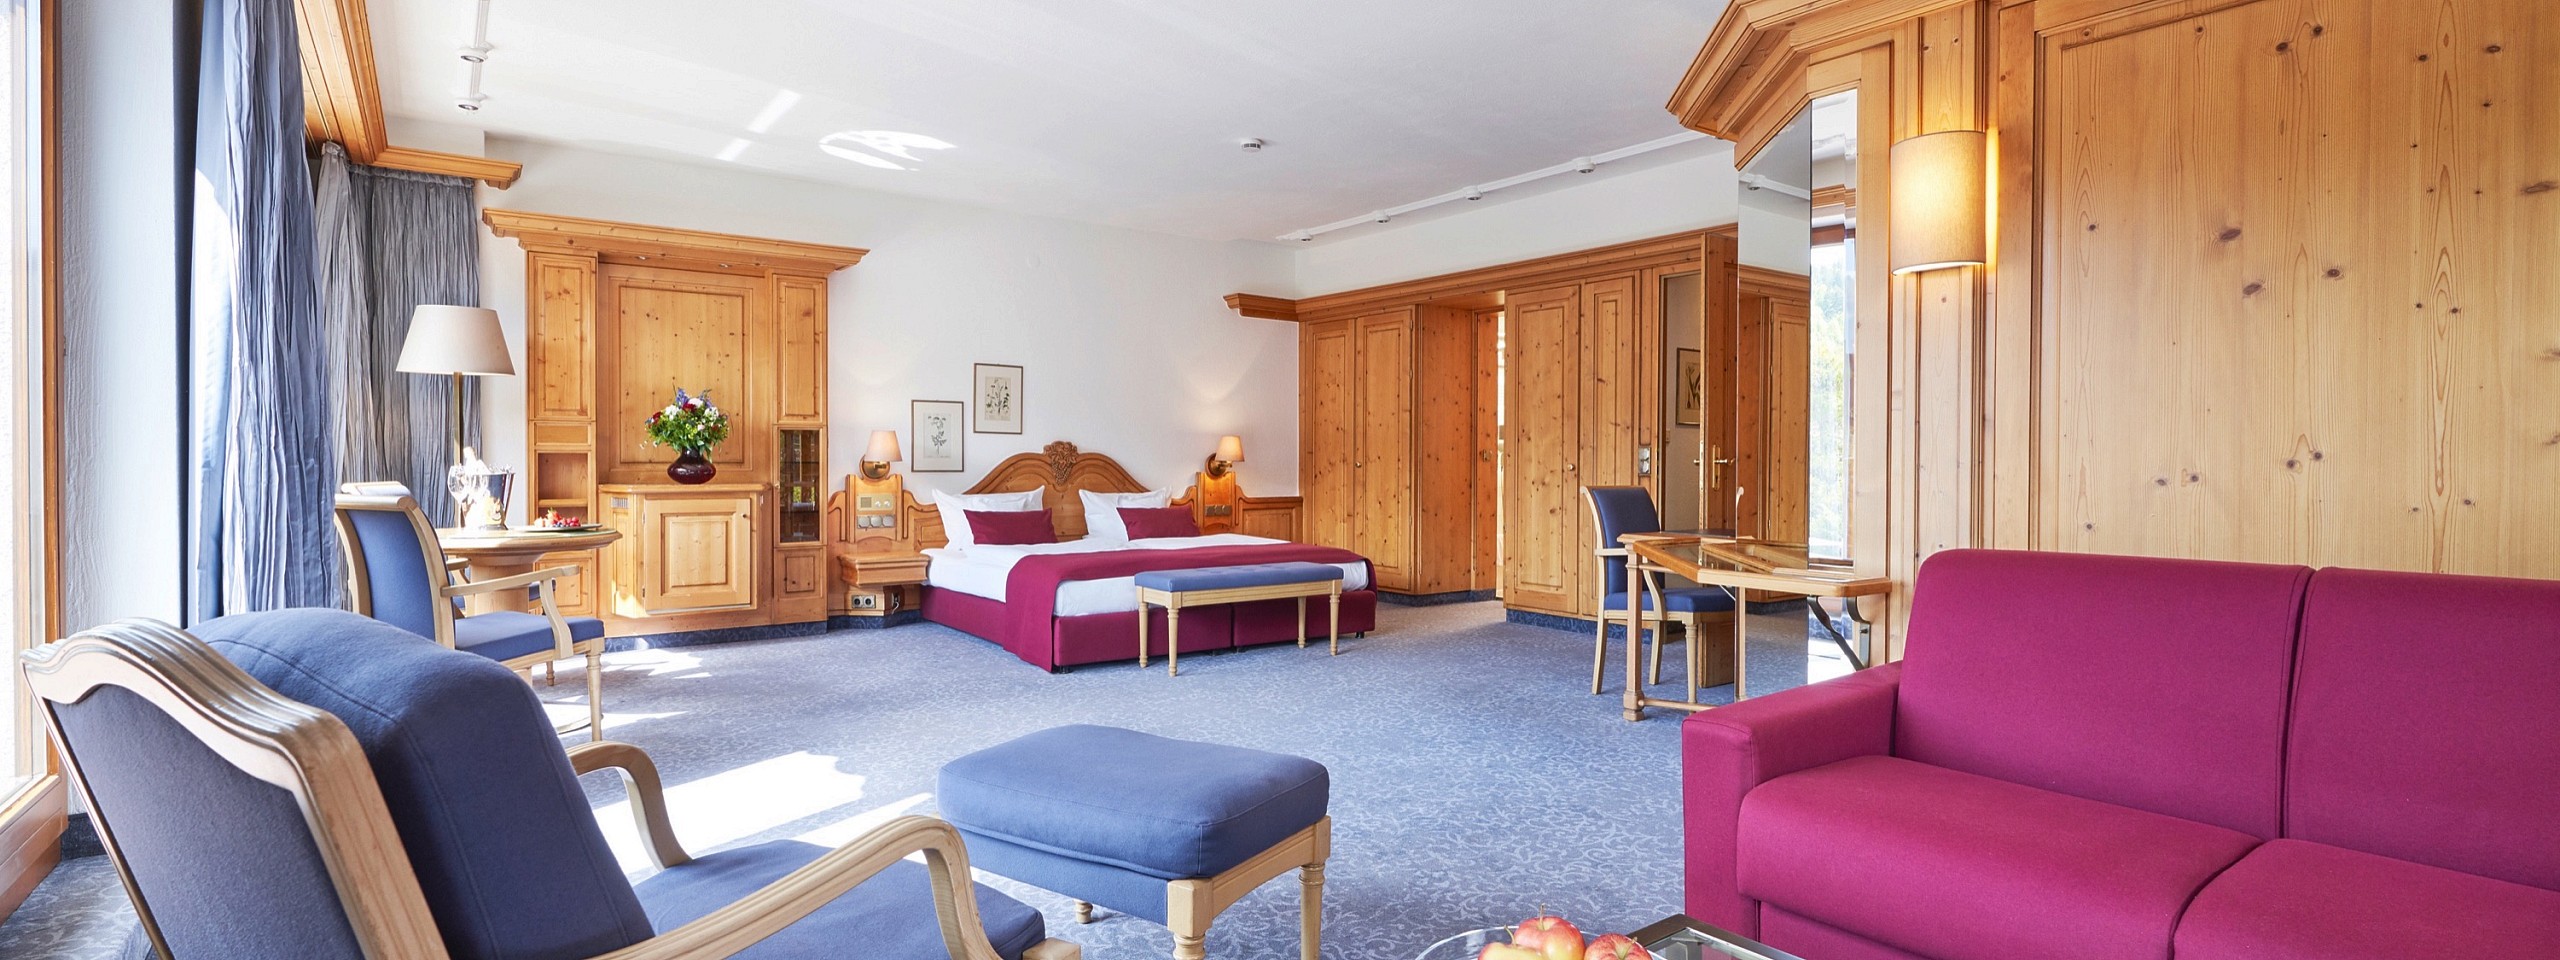 Wohn -und Schlafbereich mit viel Platz in einem der Hotelzimmer im Schwarzwald.